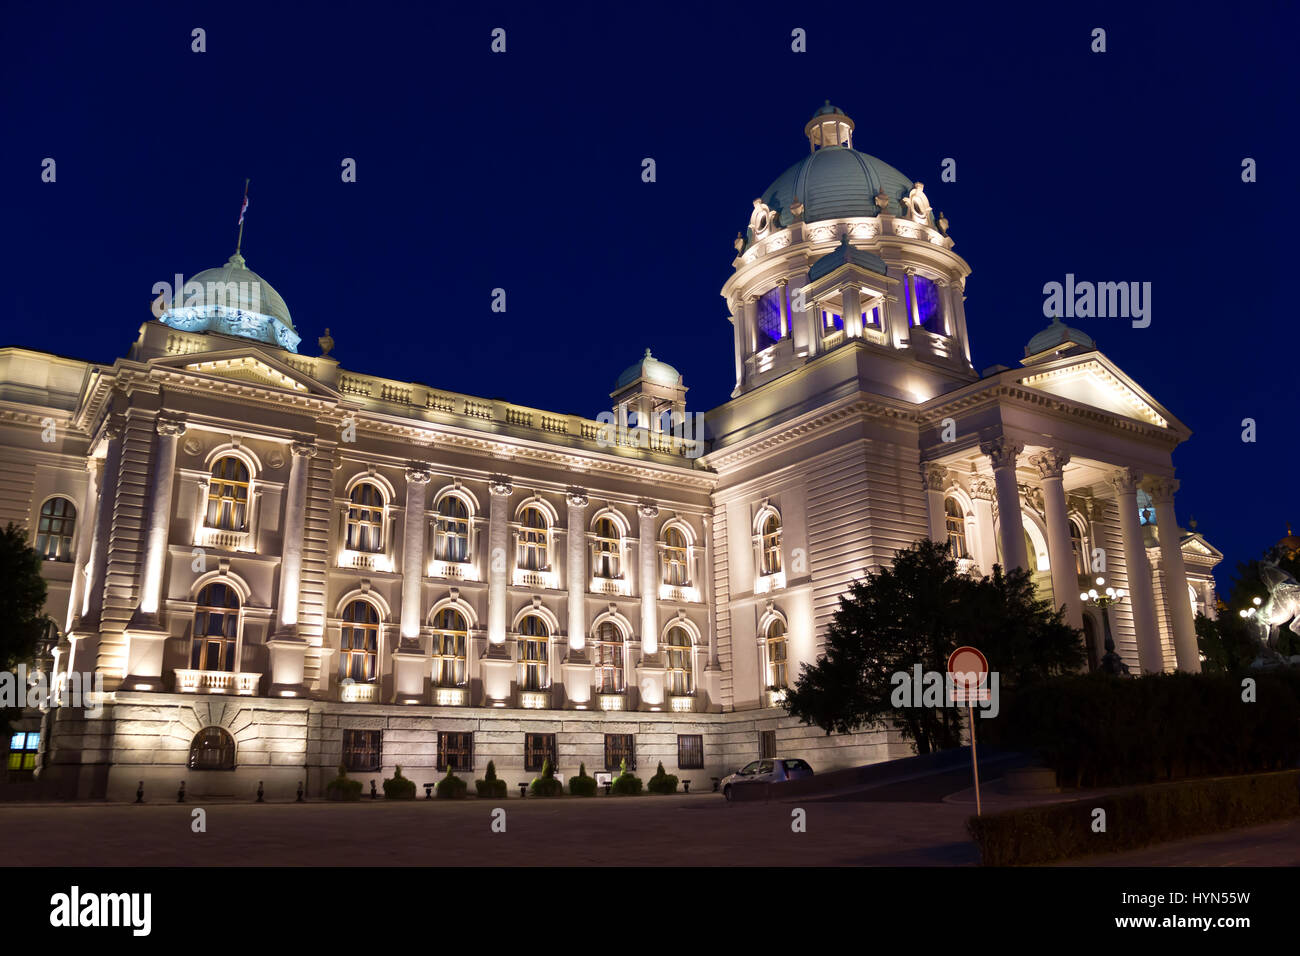 Parlament von Serbien (Parlament von Jugoslawien) Palast, auch bekannt als Nationalversammlung der Republik Serbien, Nachtszene, beleuchtet Stockfoto